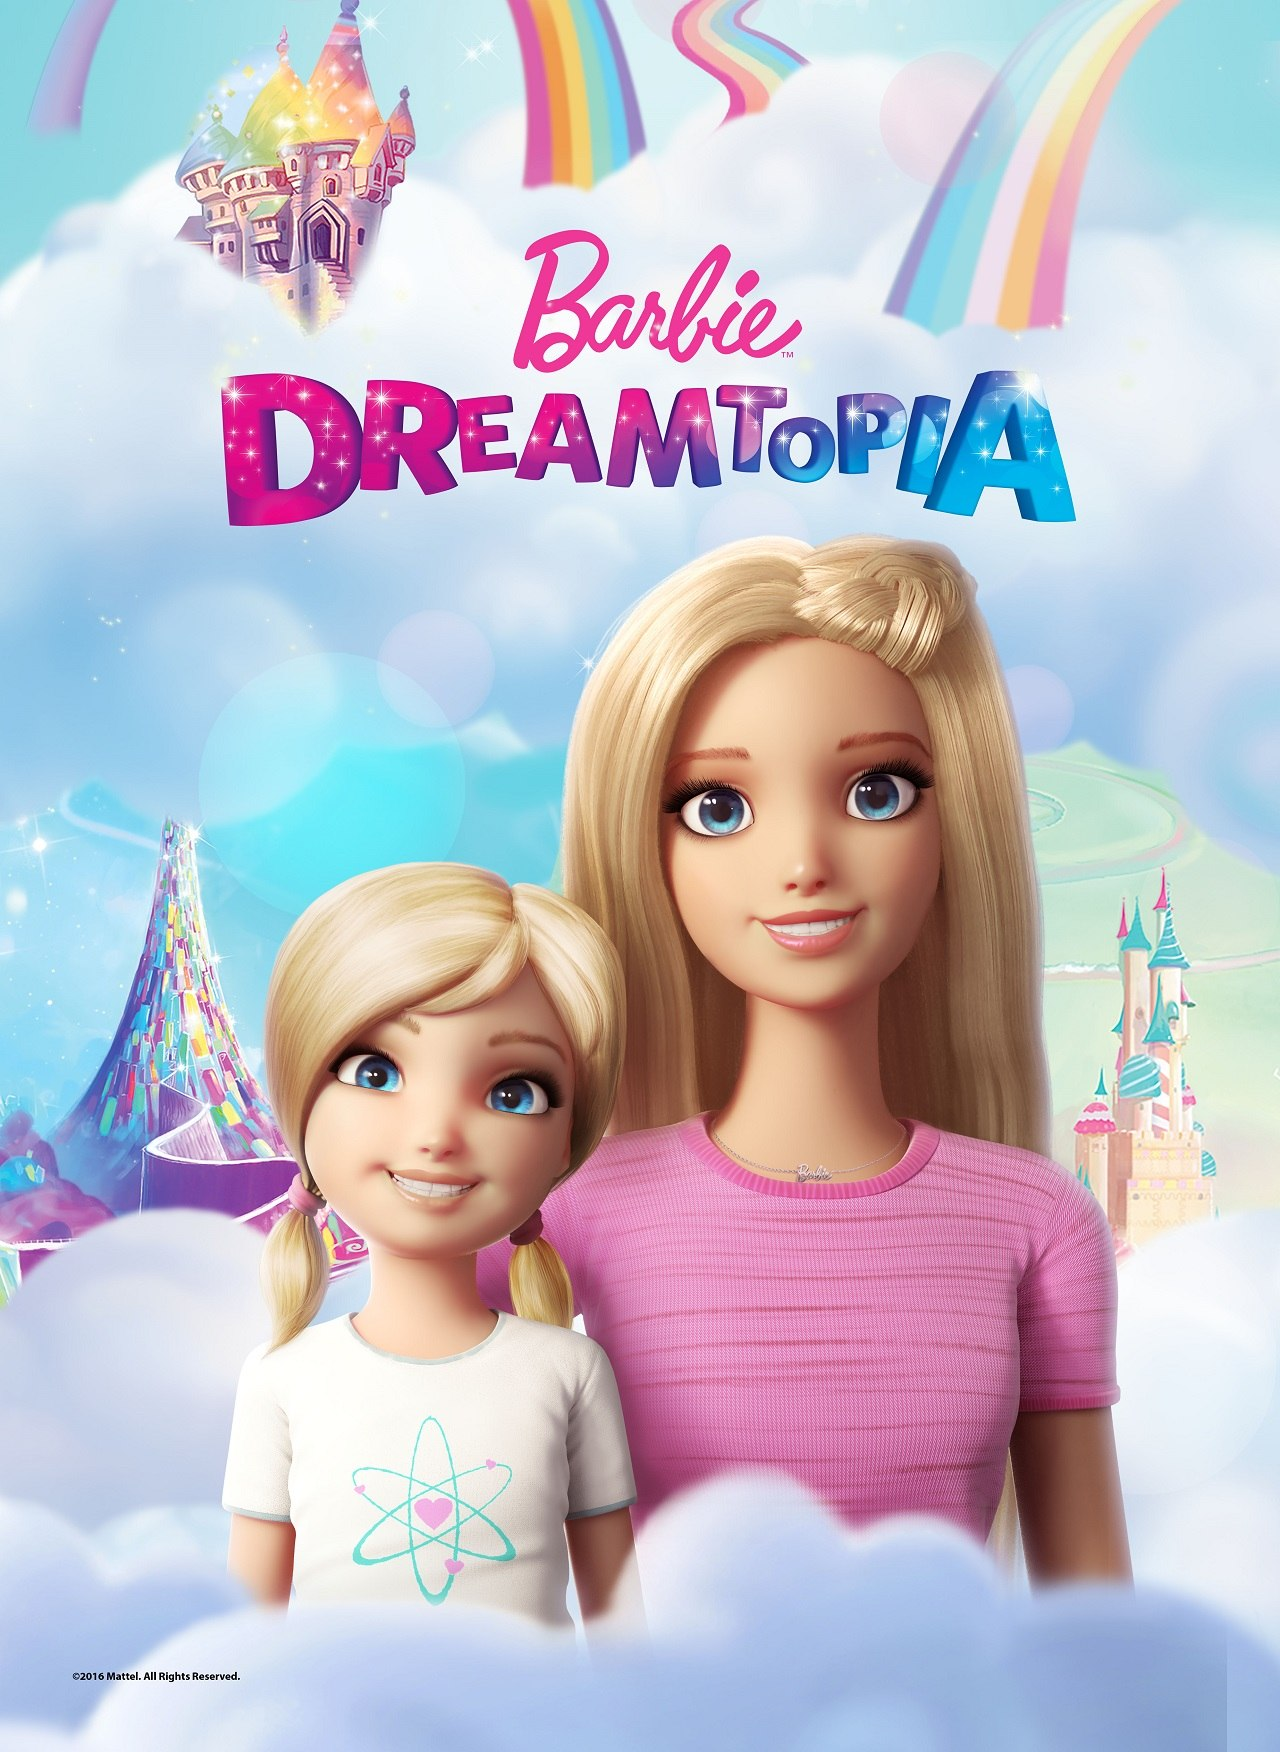 Barbie Dreamtopia: The Series | Barbie Wiki | FANDOM powered by Wikia